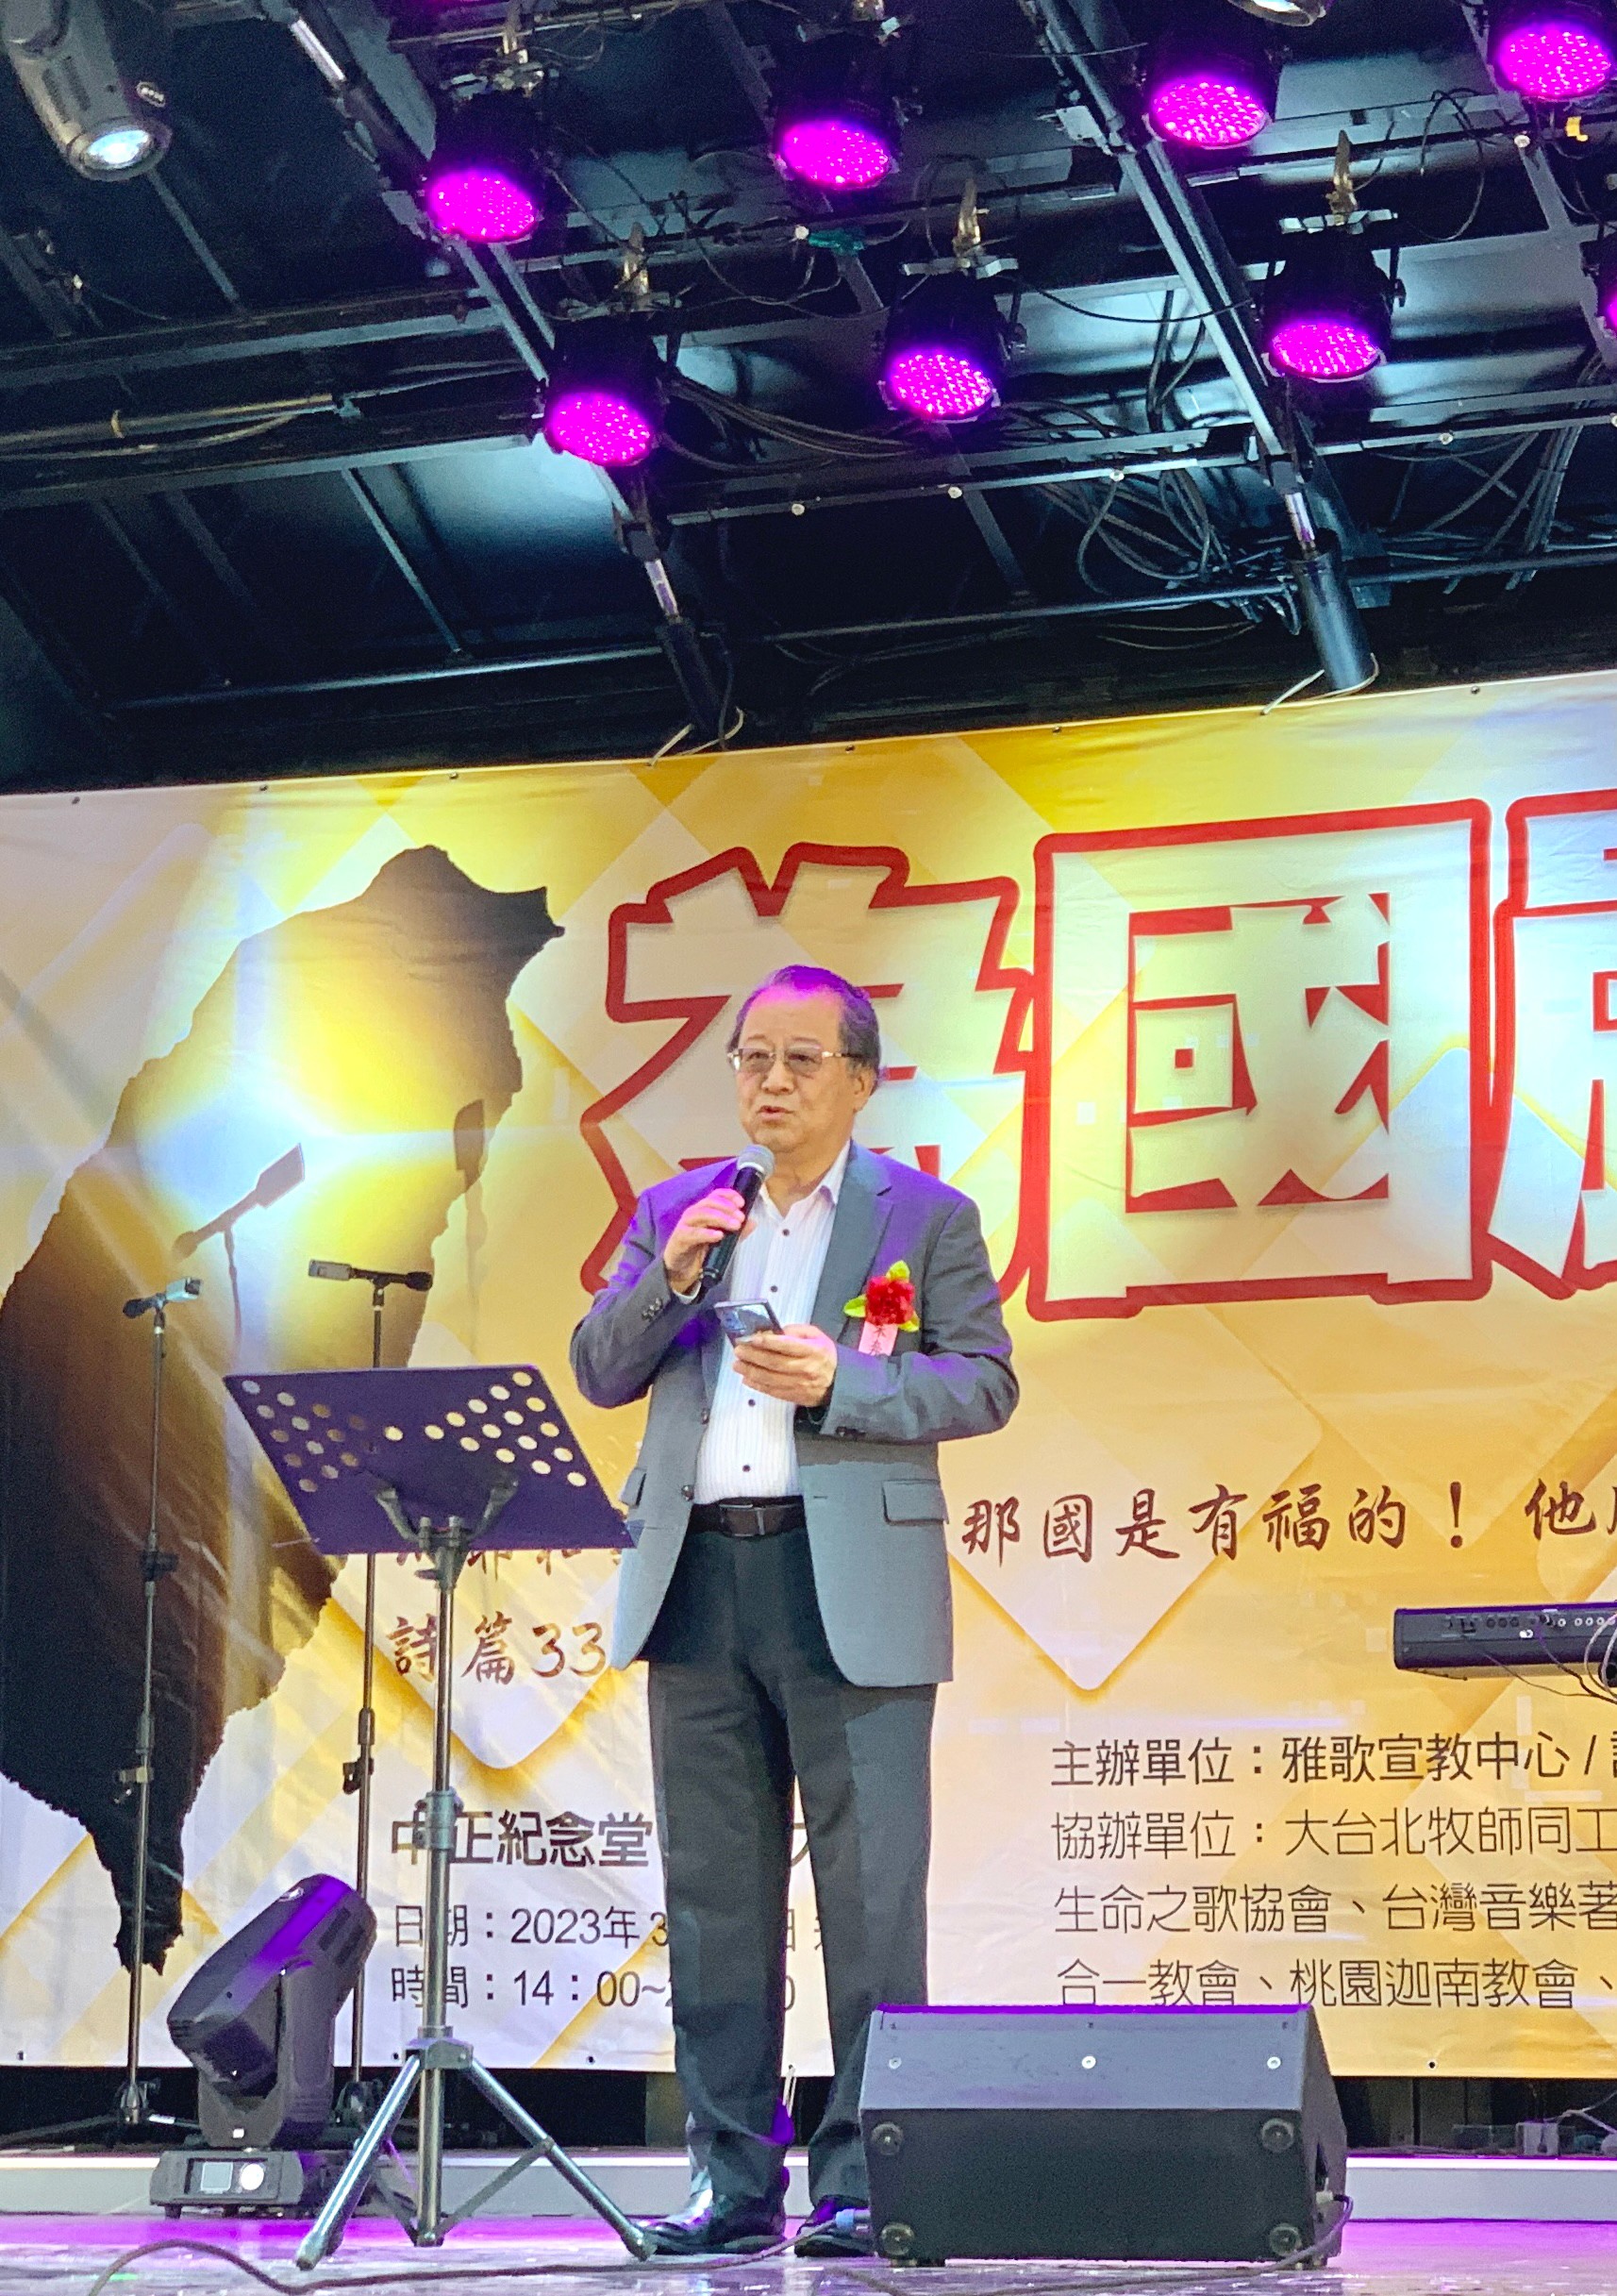 朱奔野牧師分享台灣的前途由神引導。